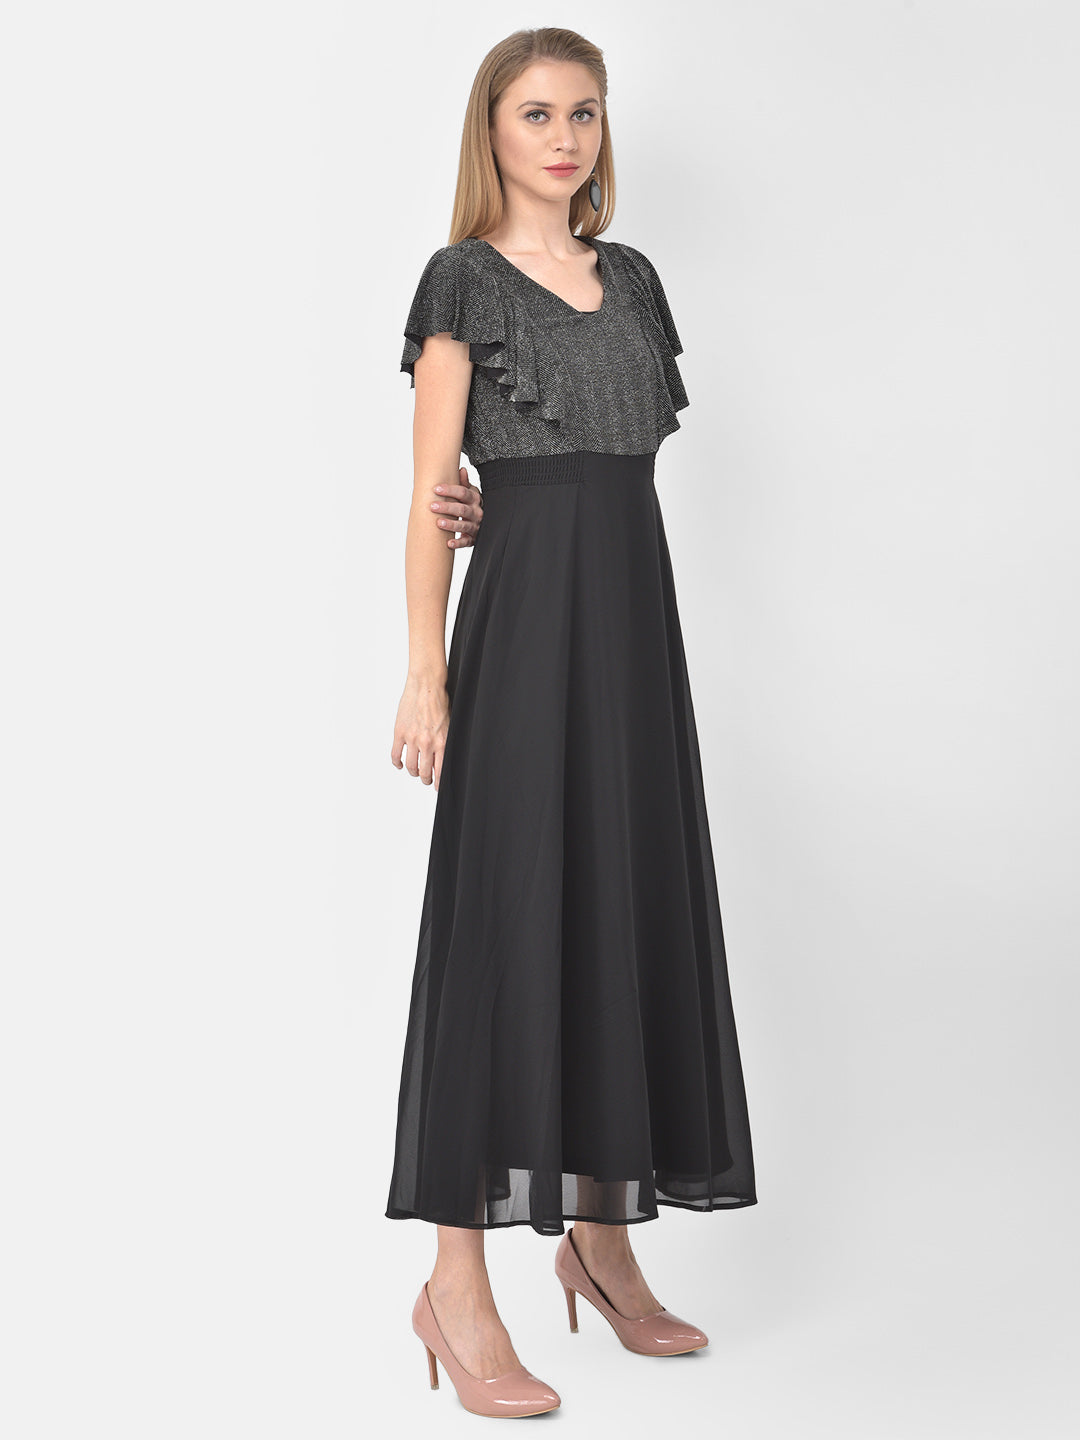 Black Cap Sleeve Maxi Solid Dress